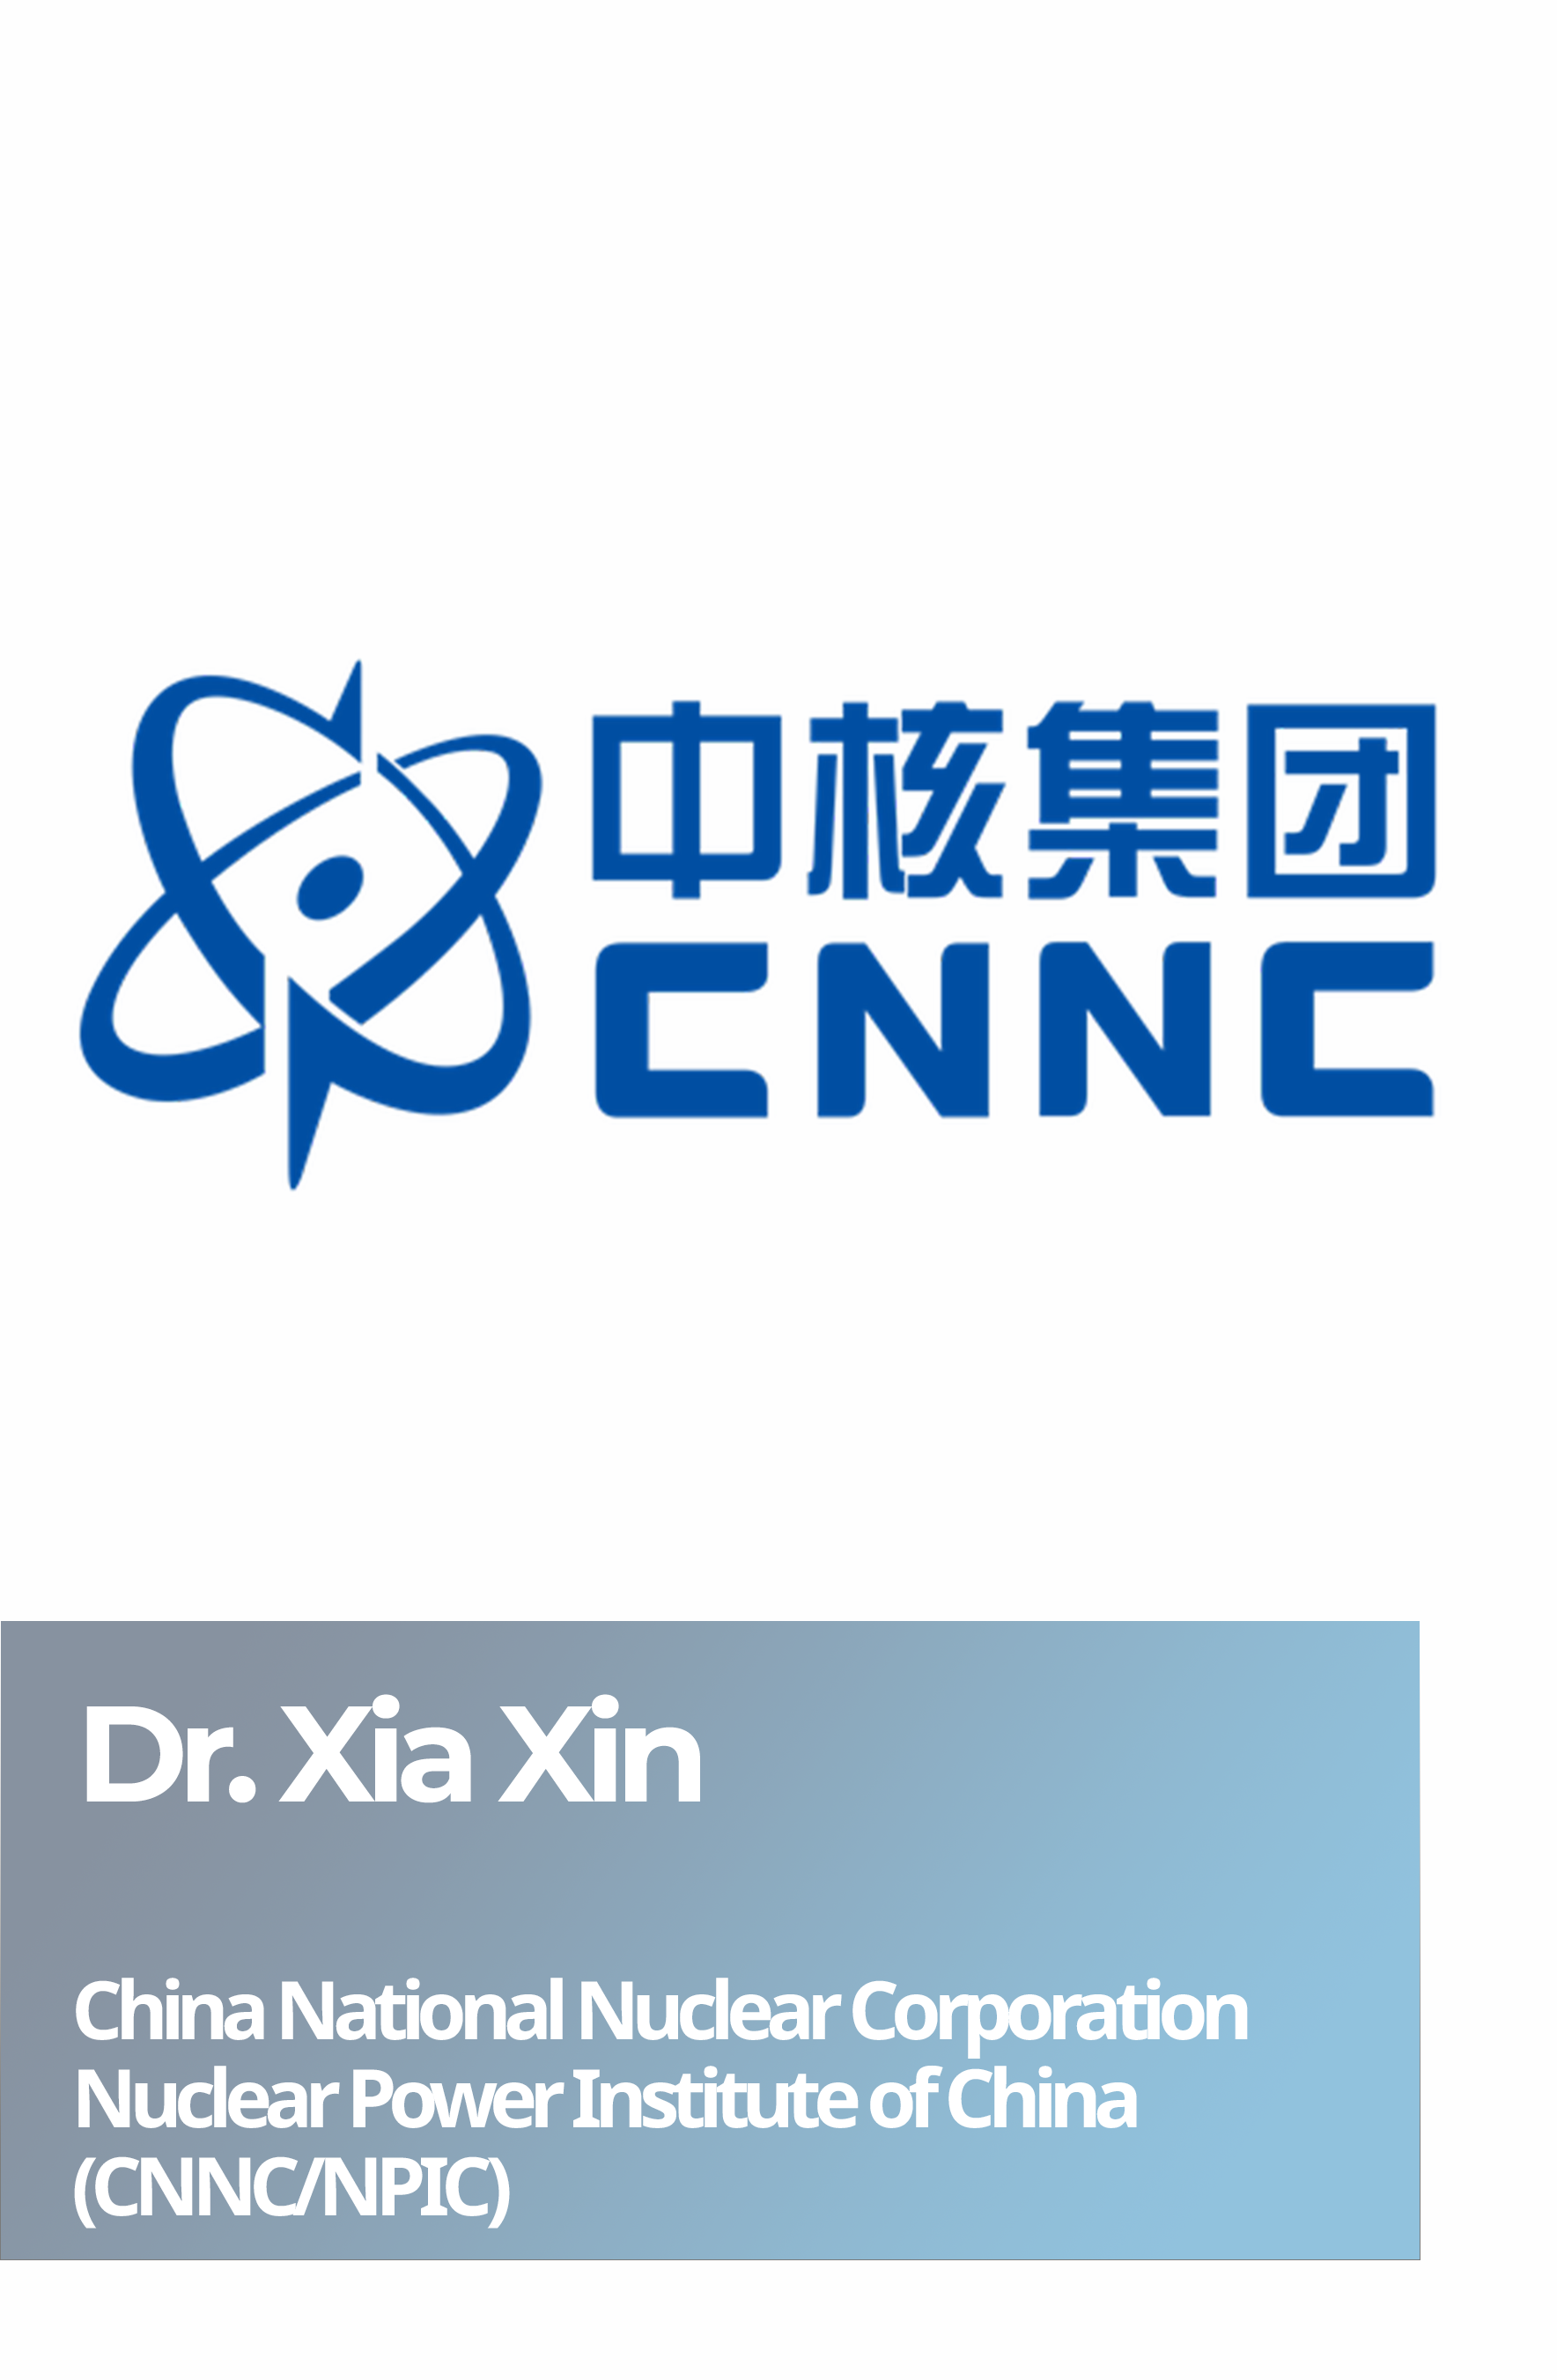 Dr. Xia Xin